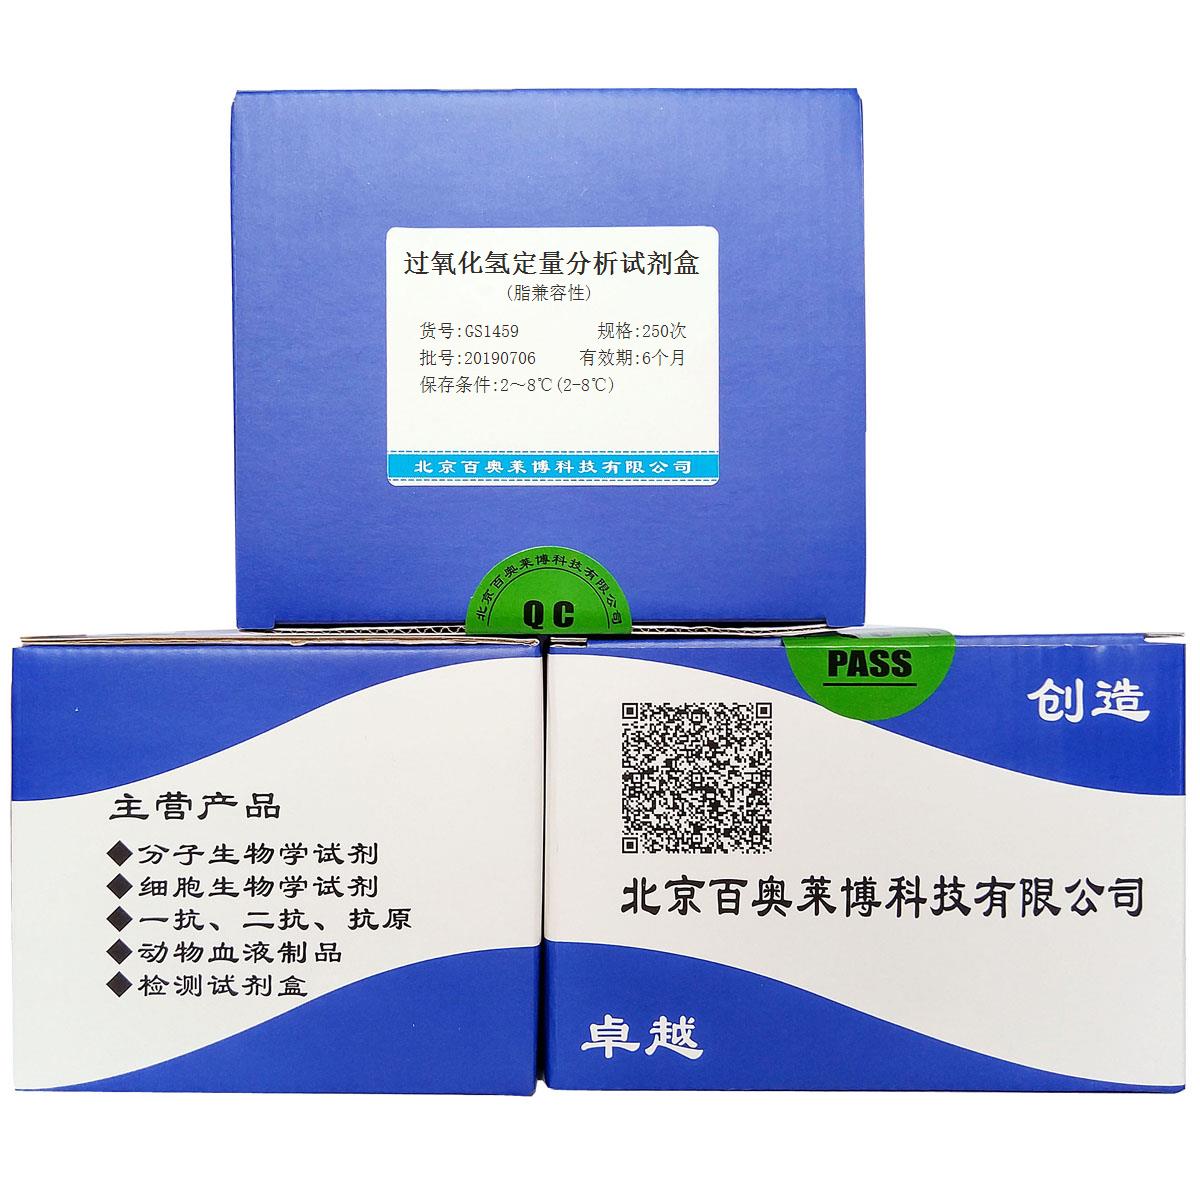 过氧化氢定量分析试剂盒(脂兼容性)北京现货